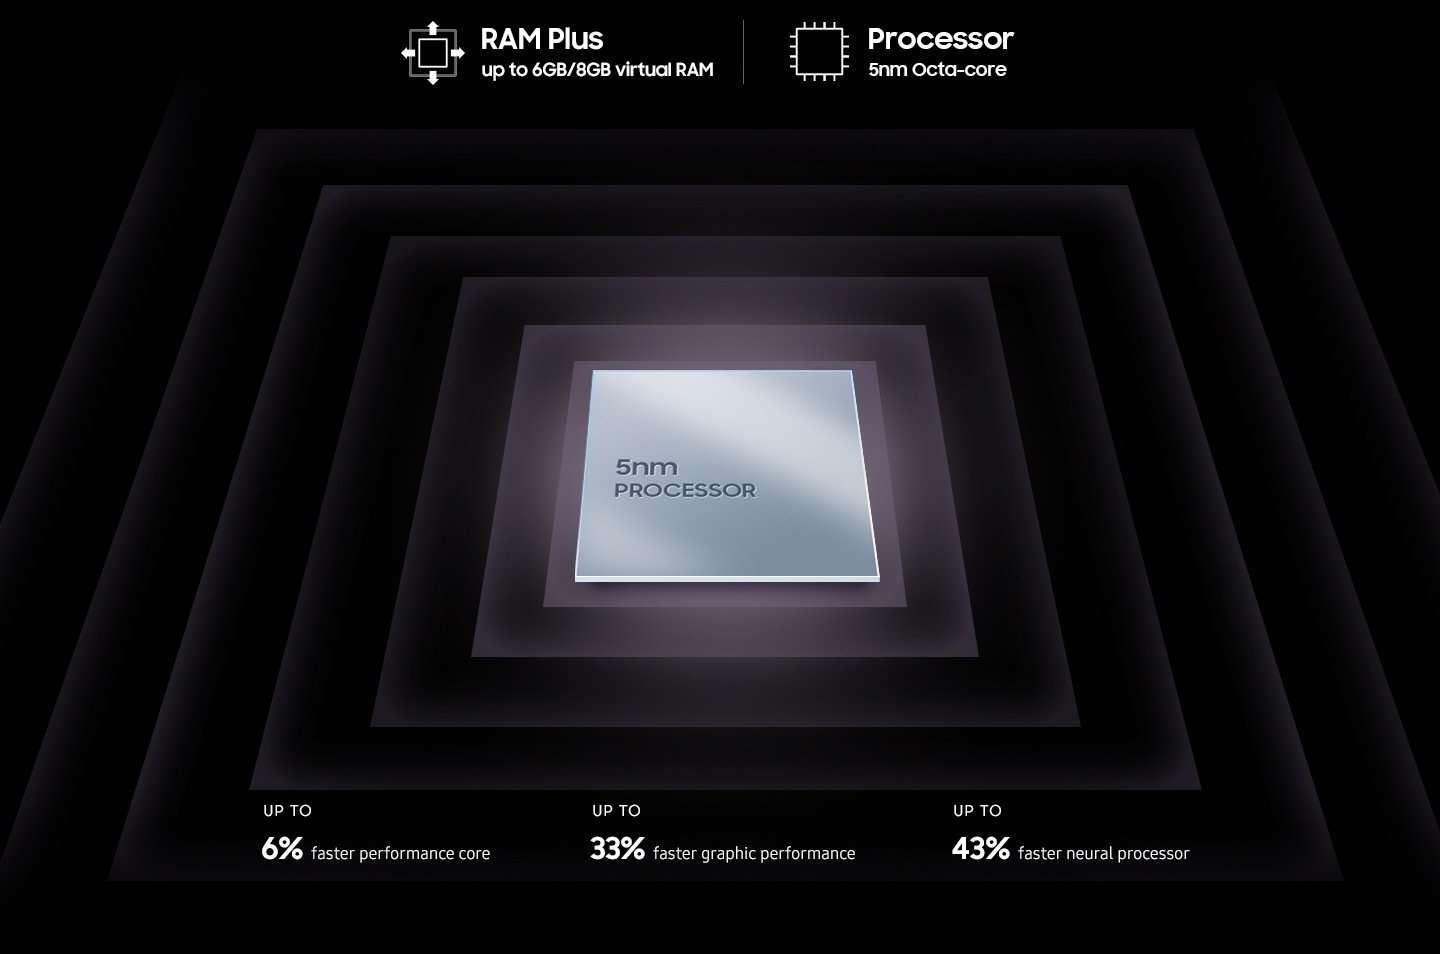 Une puce de processeur carrée métallique est affichée avec le texte Processeur 5 nm sur sa surface. Autour de la puce, les textes qui apparaissent indiquent RAM Plus jusqu'à 6 Go/8 Go de RAM virtuelle, processeur Octa-core 5 nm, performance jusqu'à 6 % plus rapide, performances graphiques jusqu'à 33 % plus rapides, processeur neural jusqu'à 43 % plus rapide.